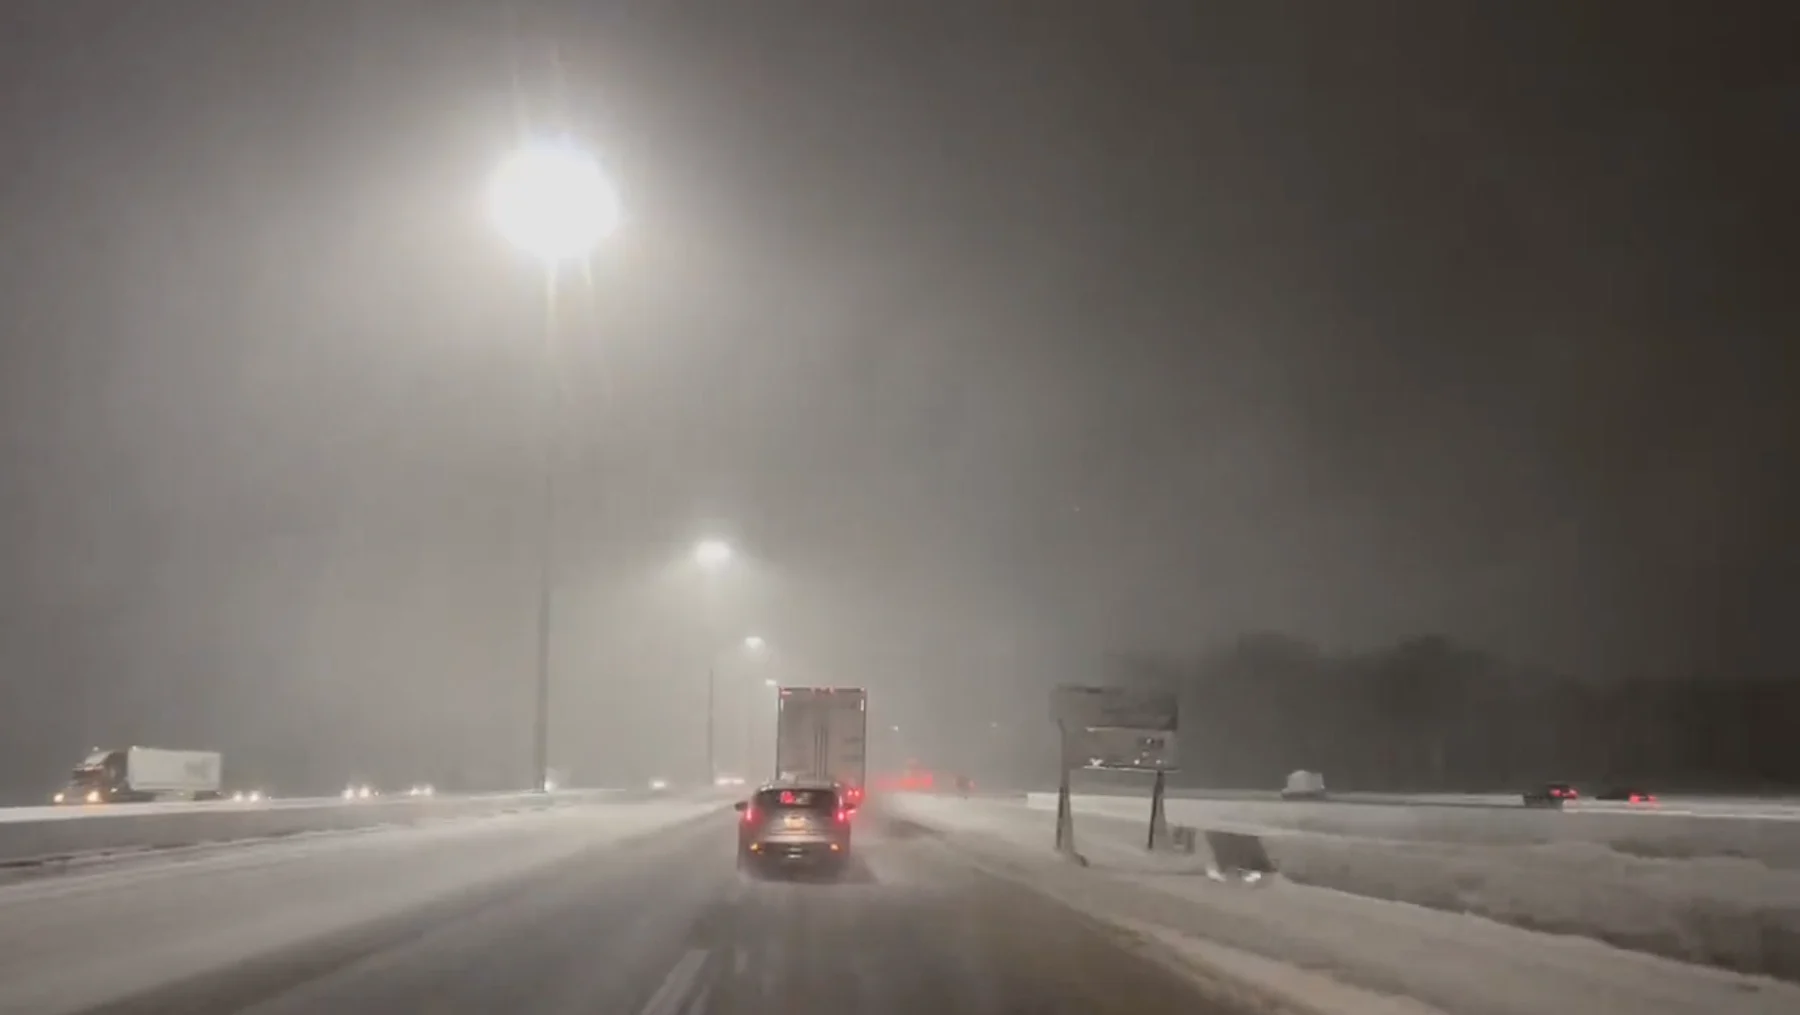 (MARK ROBINSON) Snow night Ontario highway January 25 2023